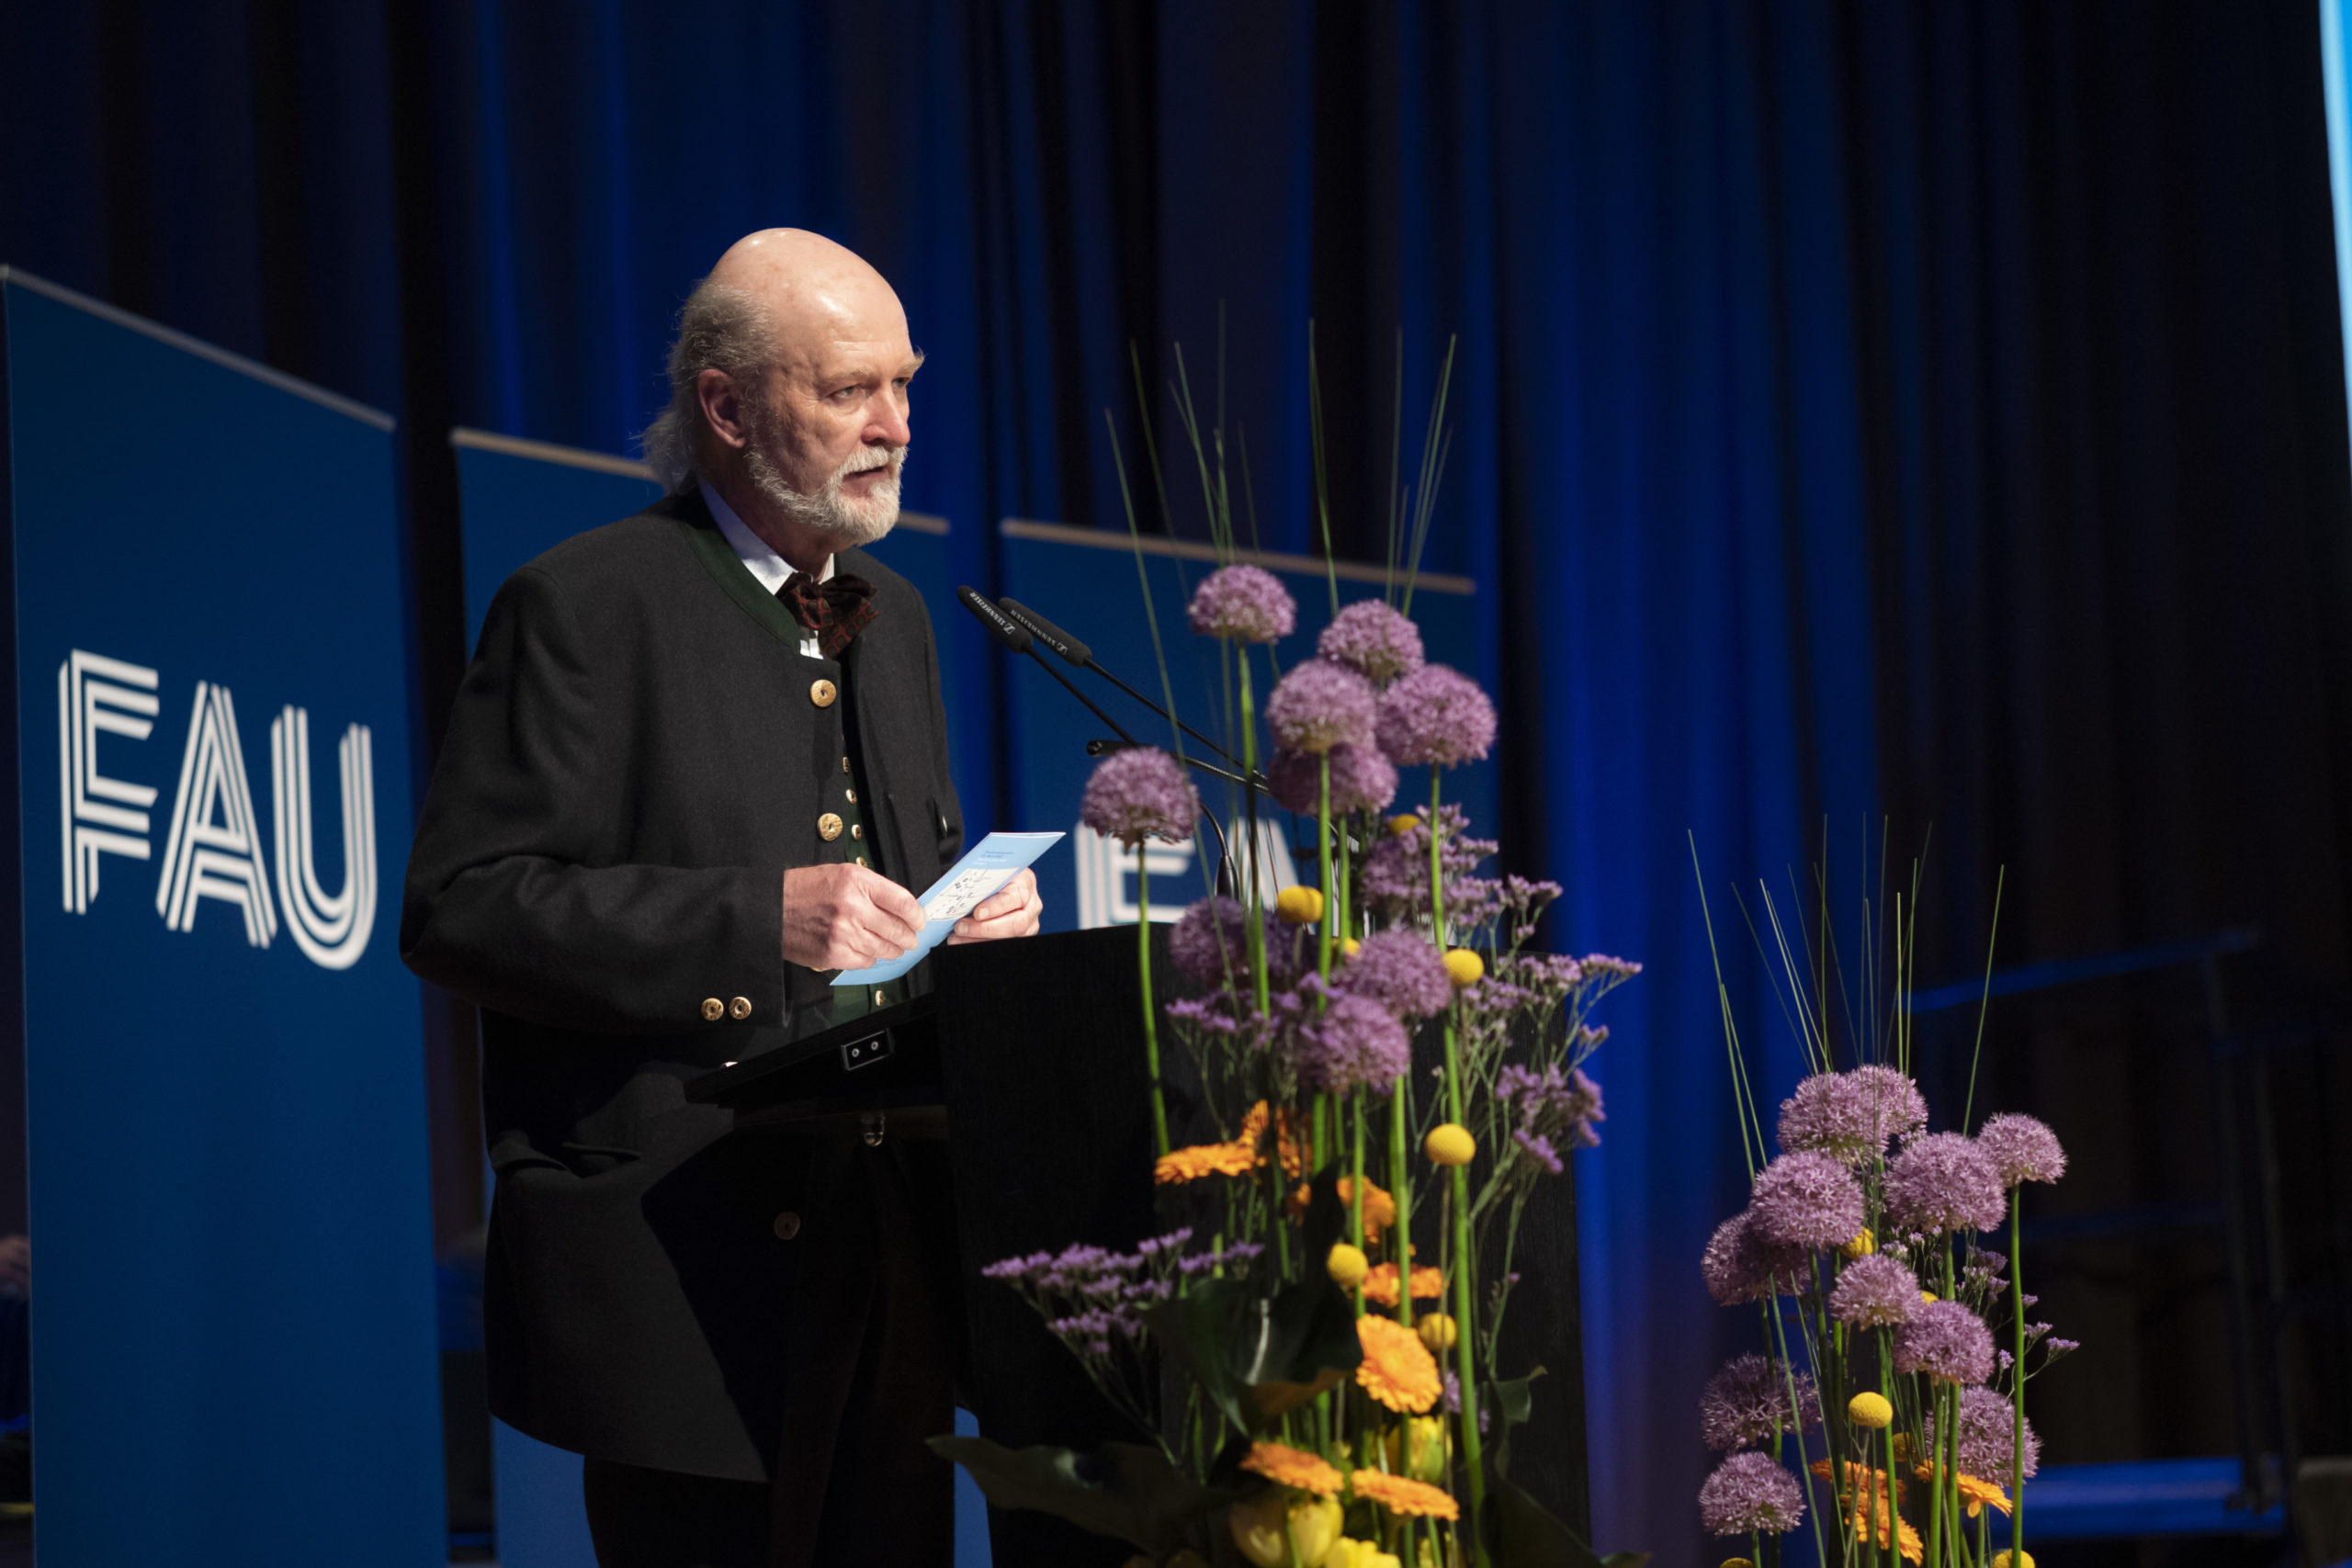 Staatsexamensfeier am 23. April 2022 - Prof. Neuhuber, Vorsitzender Alumni-Verein